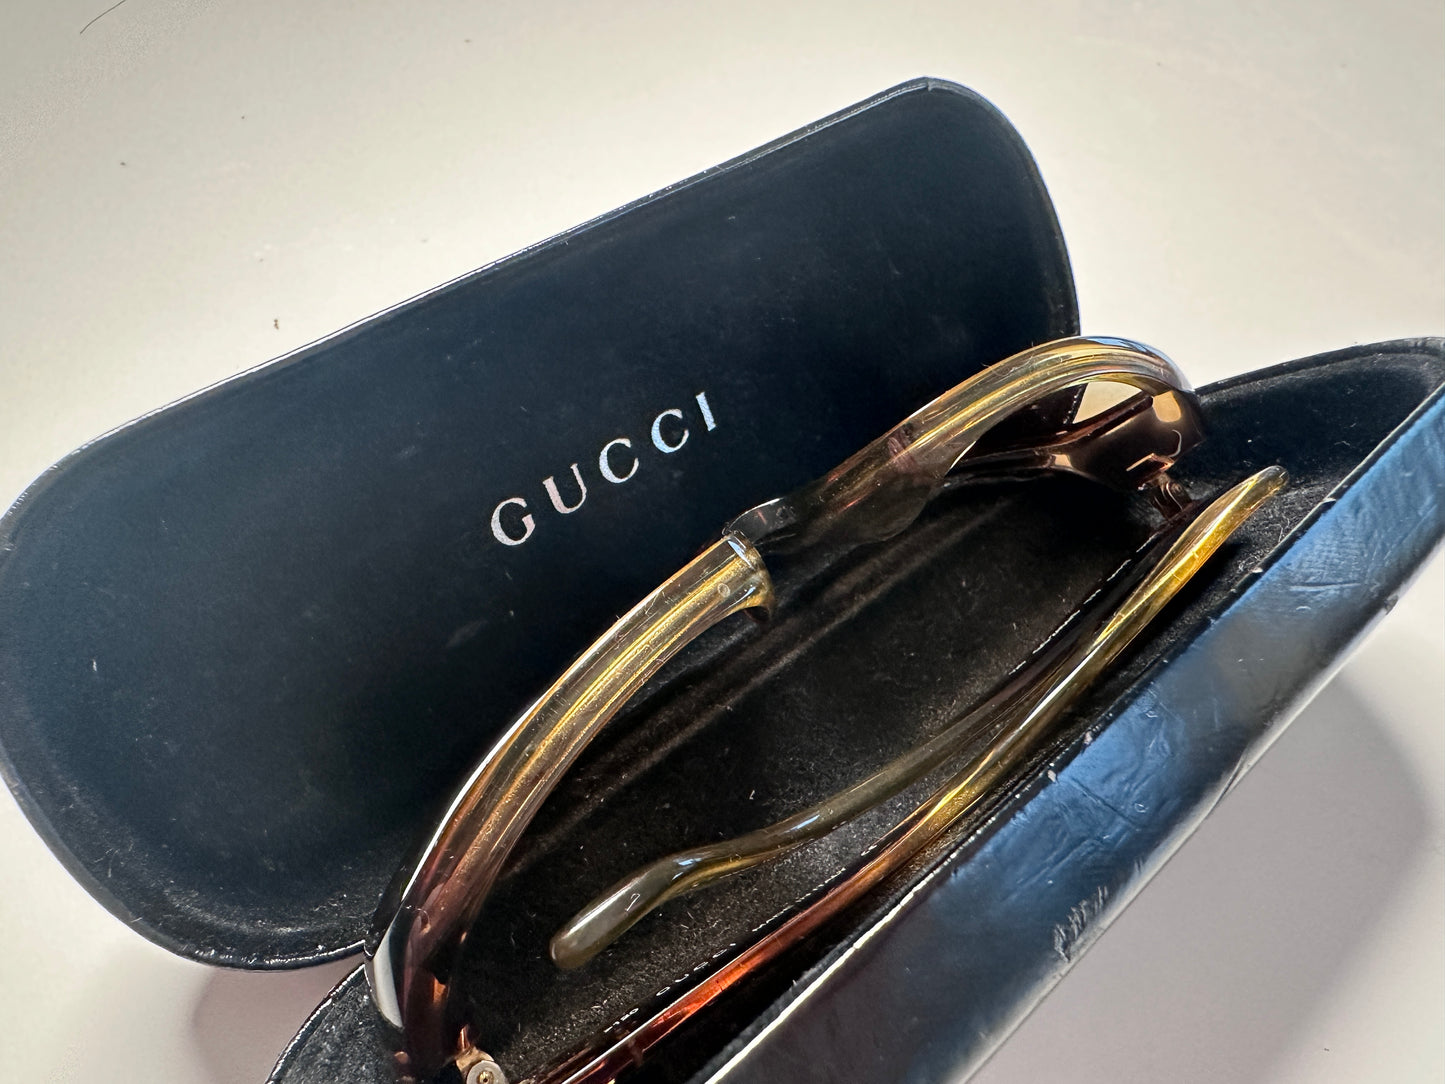 Gucci zonnebril